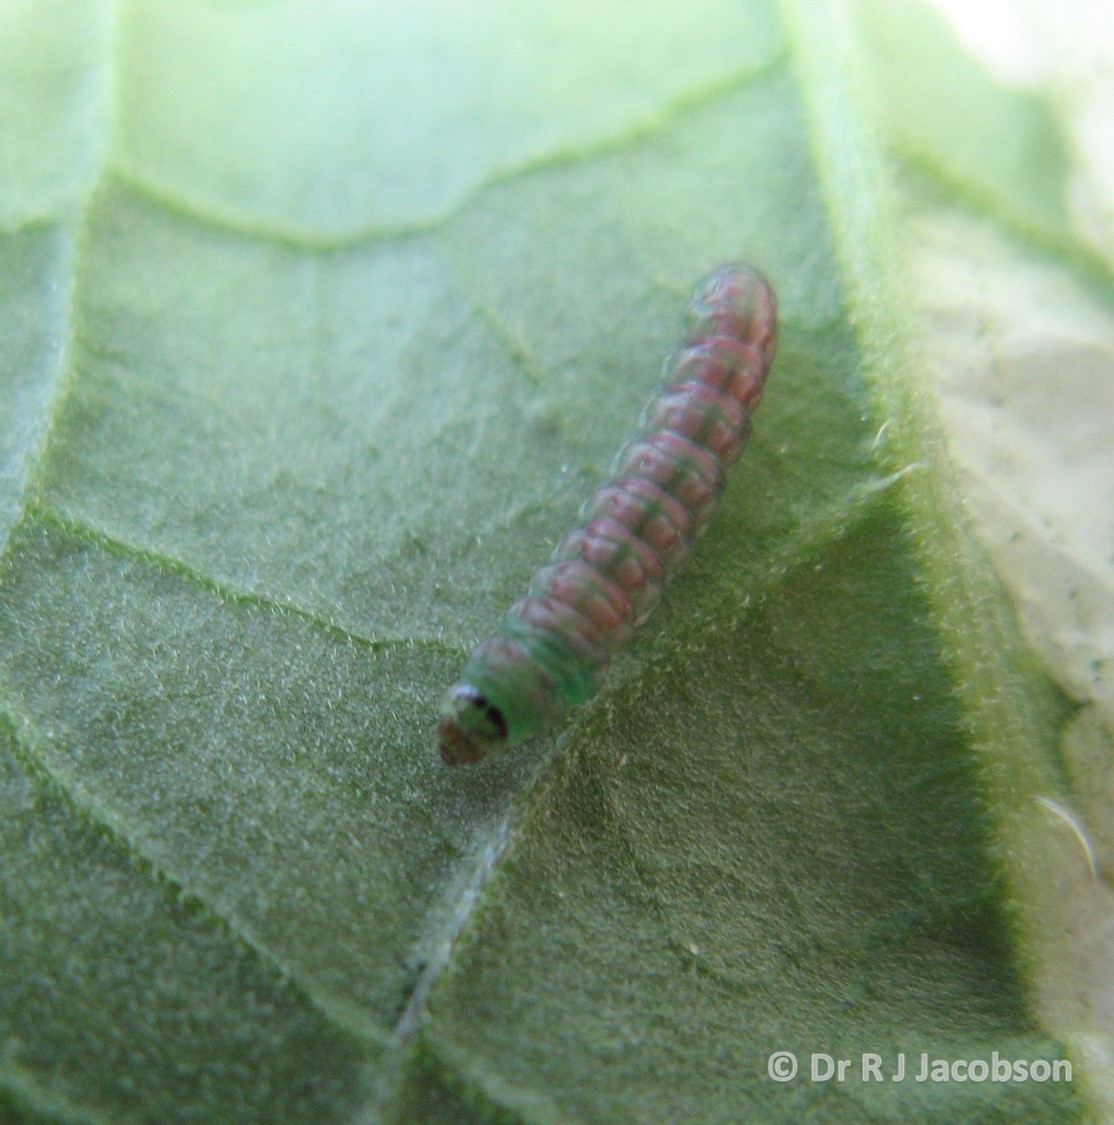 Tuta absoluta larva. Copyright of Dr R J Jacobson (RJC Ltd).